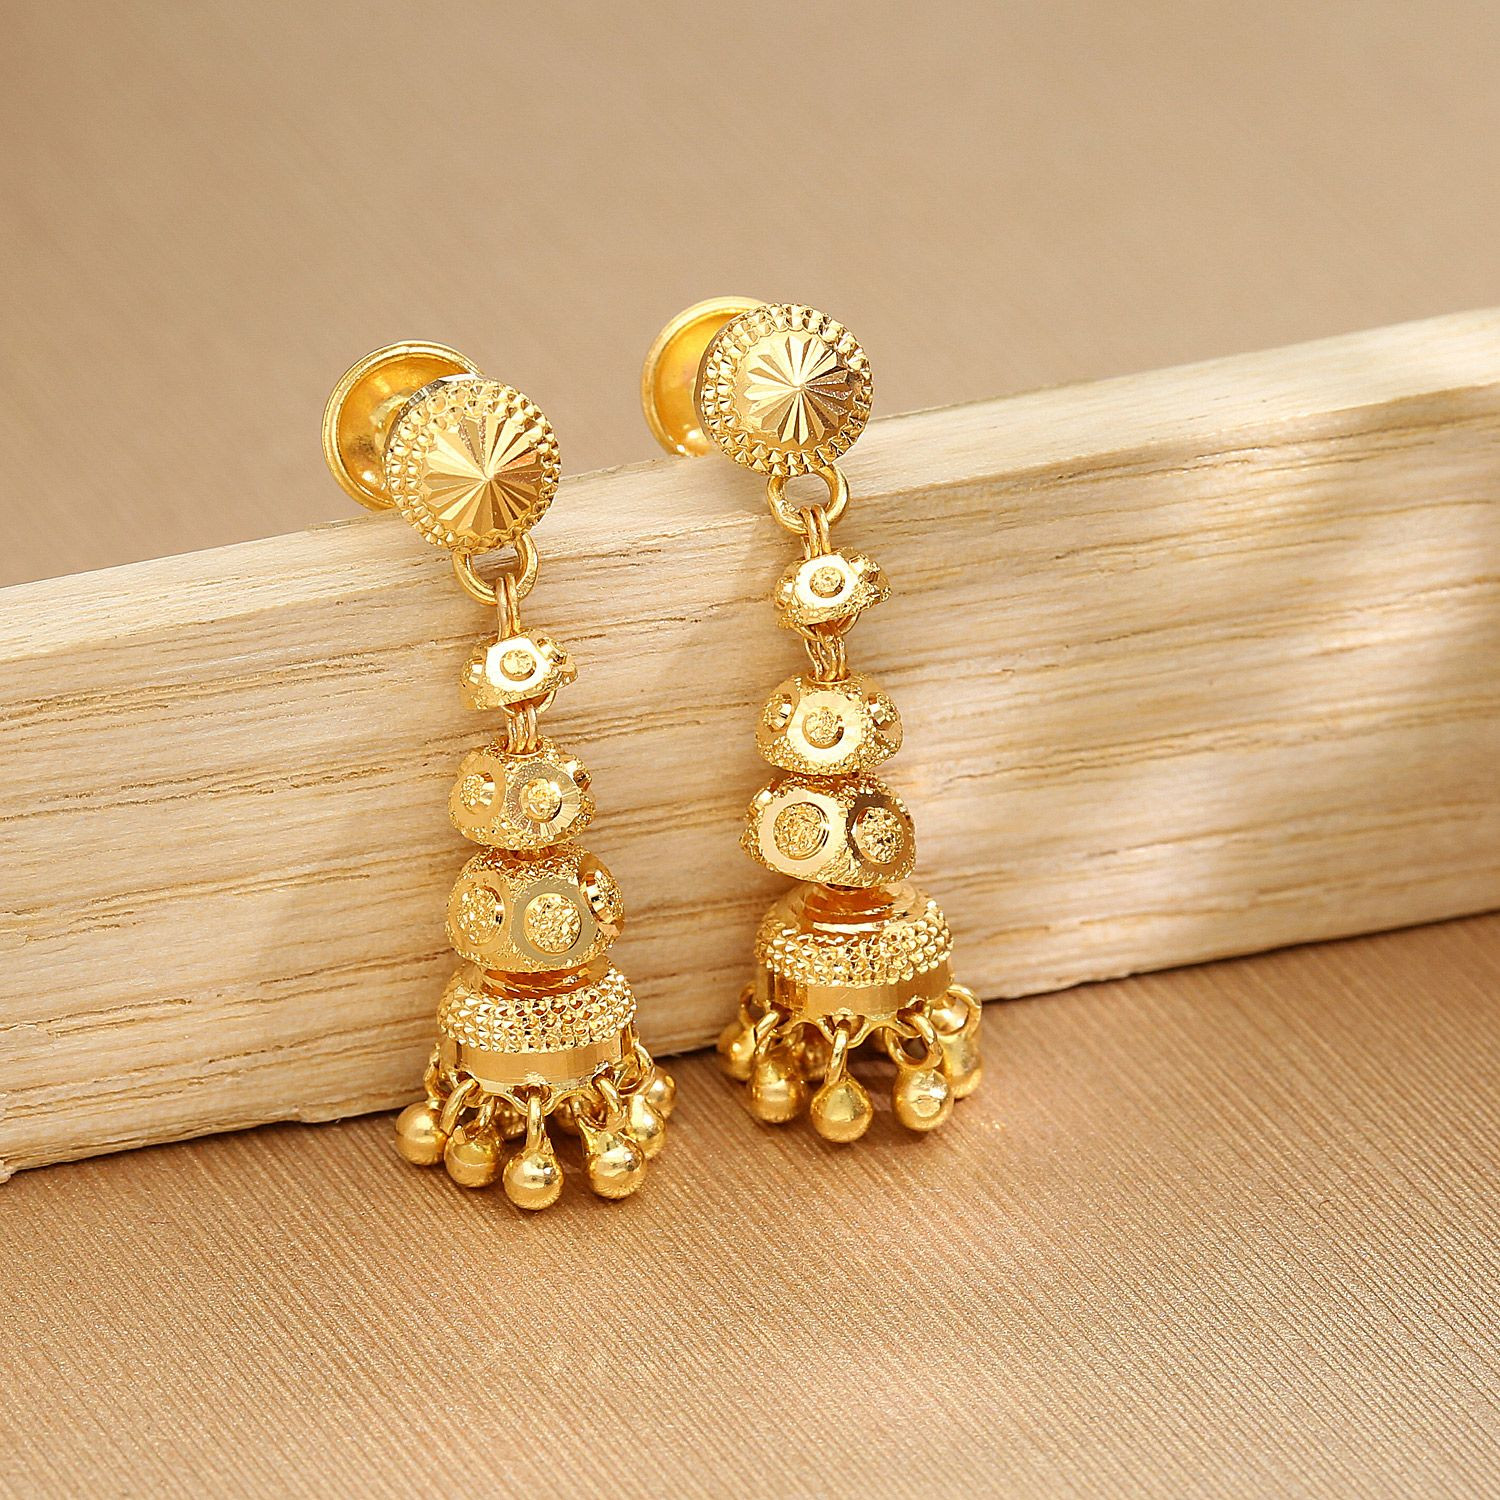 Share 276+ malabar gold earrings best